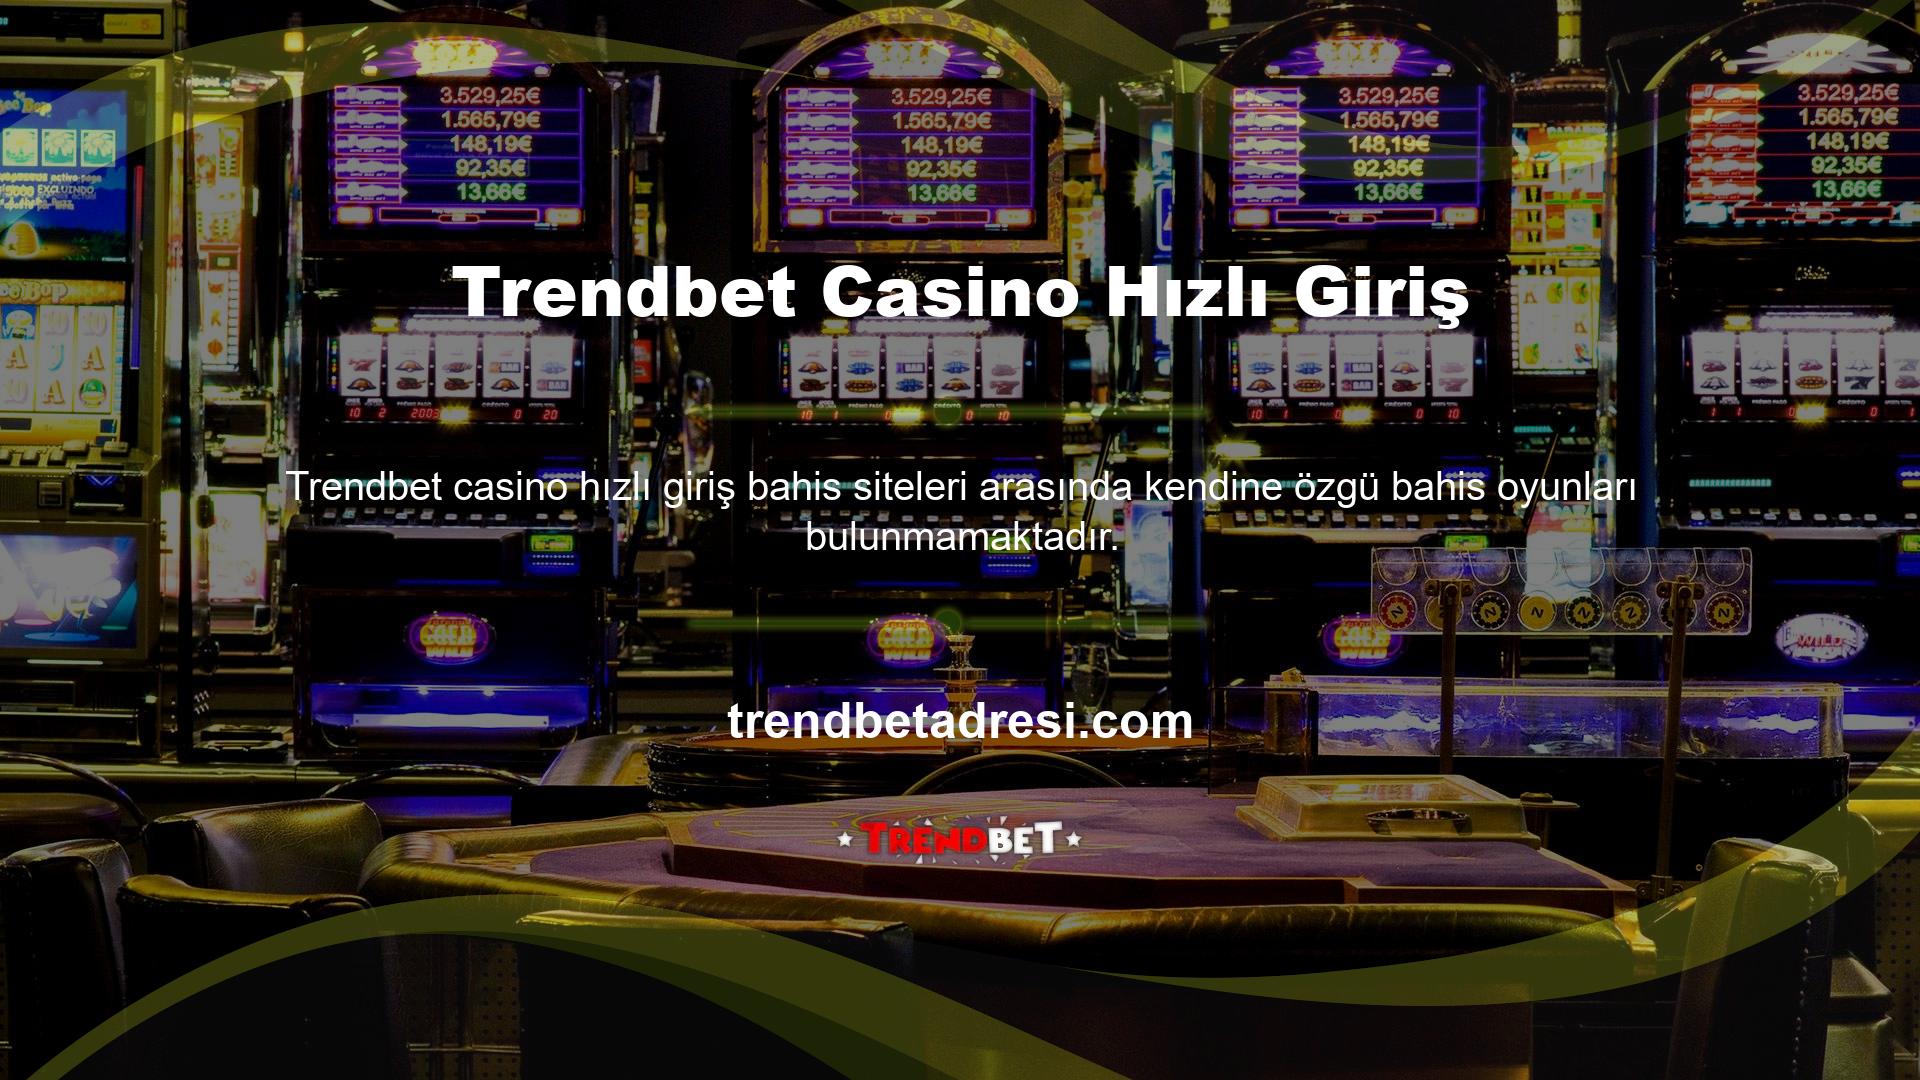 Trendbet casino oyunu hızlı giriş bahis sitelerinde mevcut olan oyunların artan çeşitliliği ve miktarı, onları diğerlerinden farklı kılmaktadır